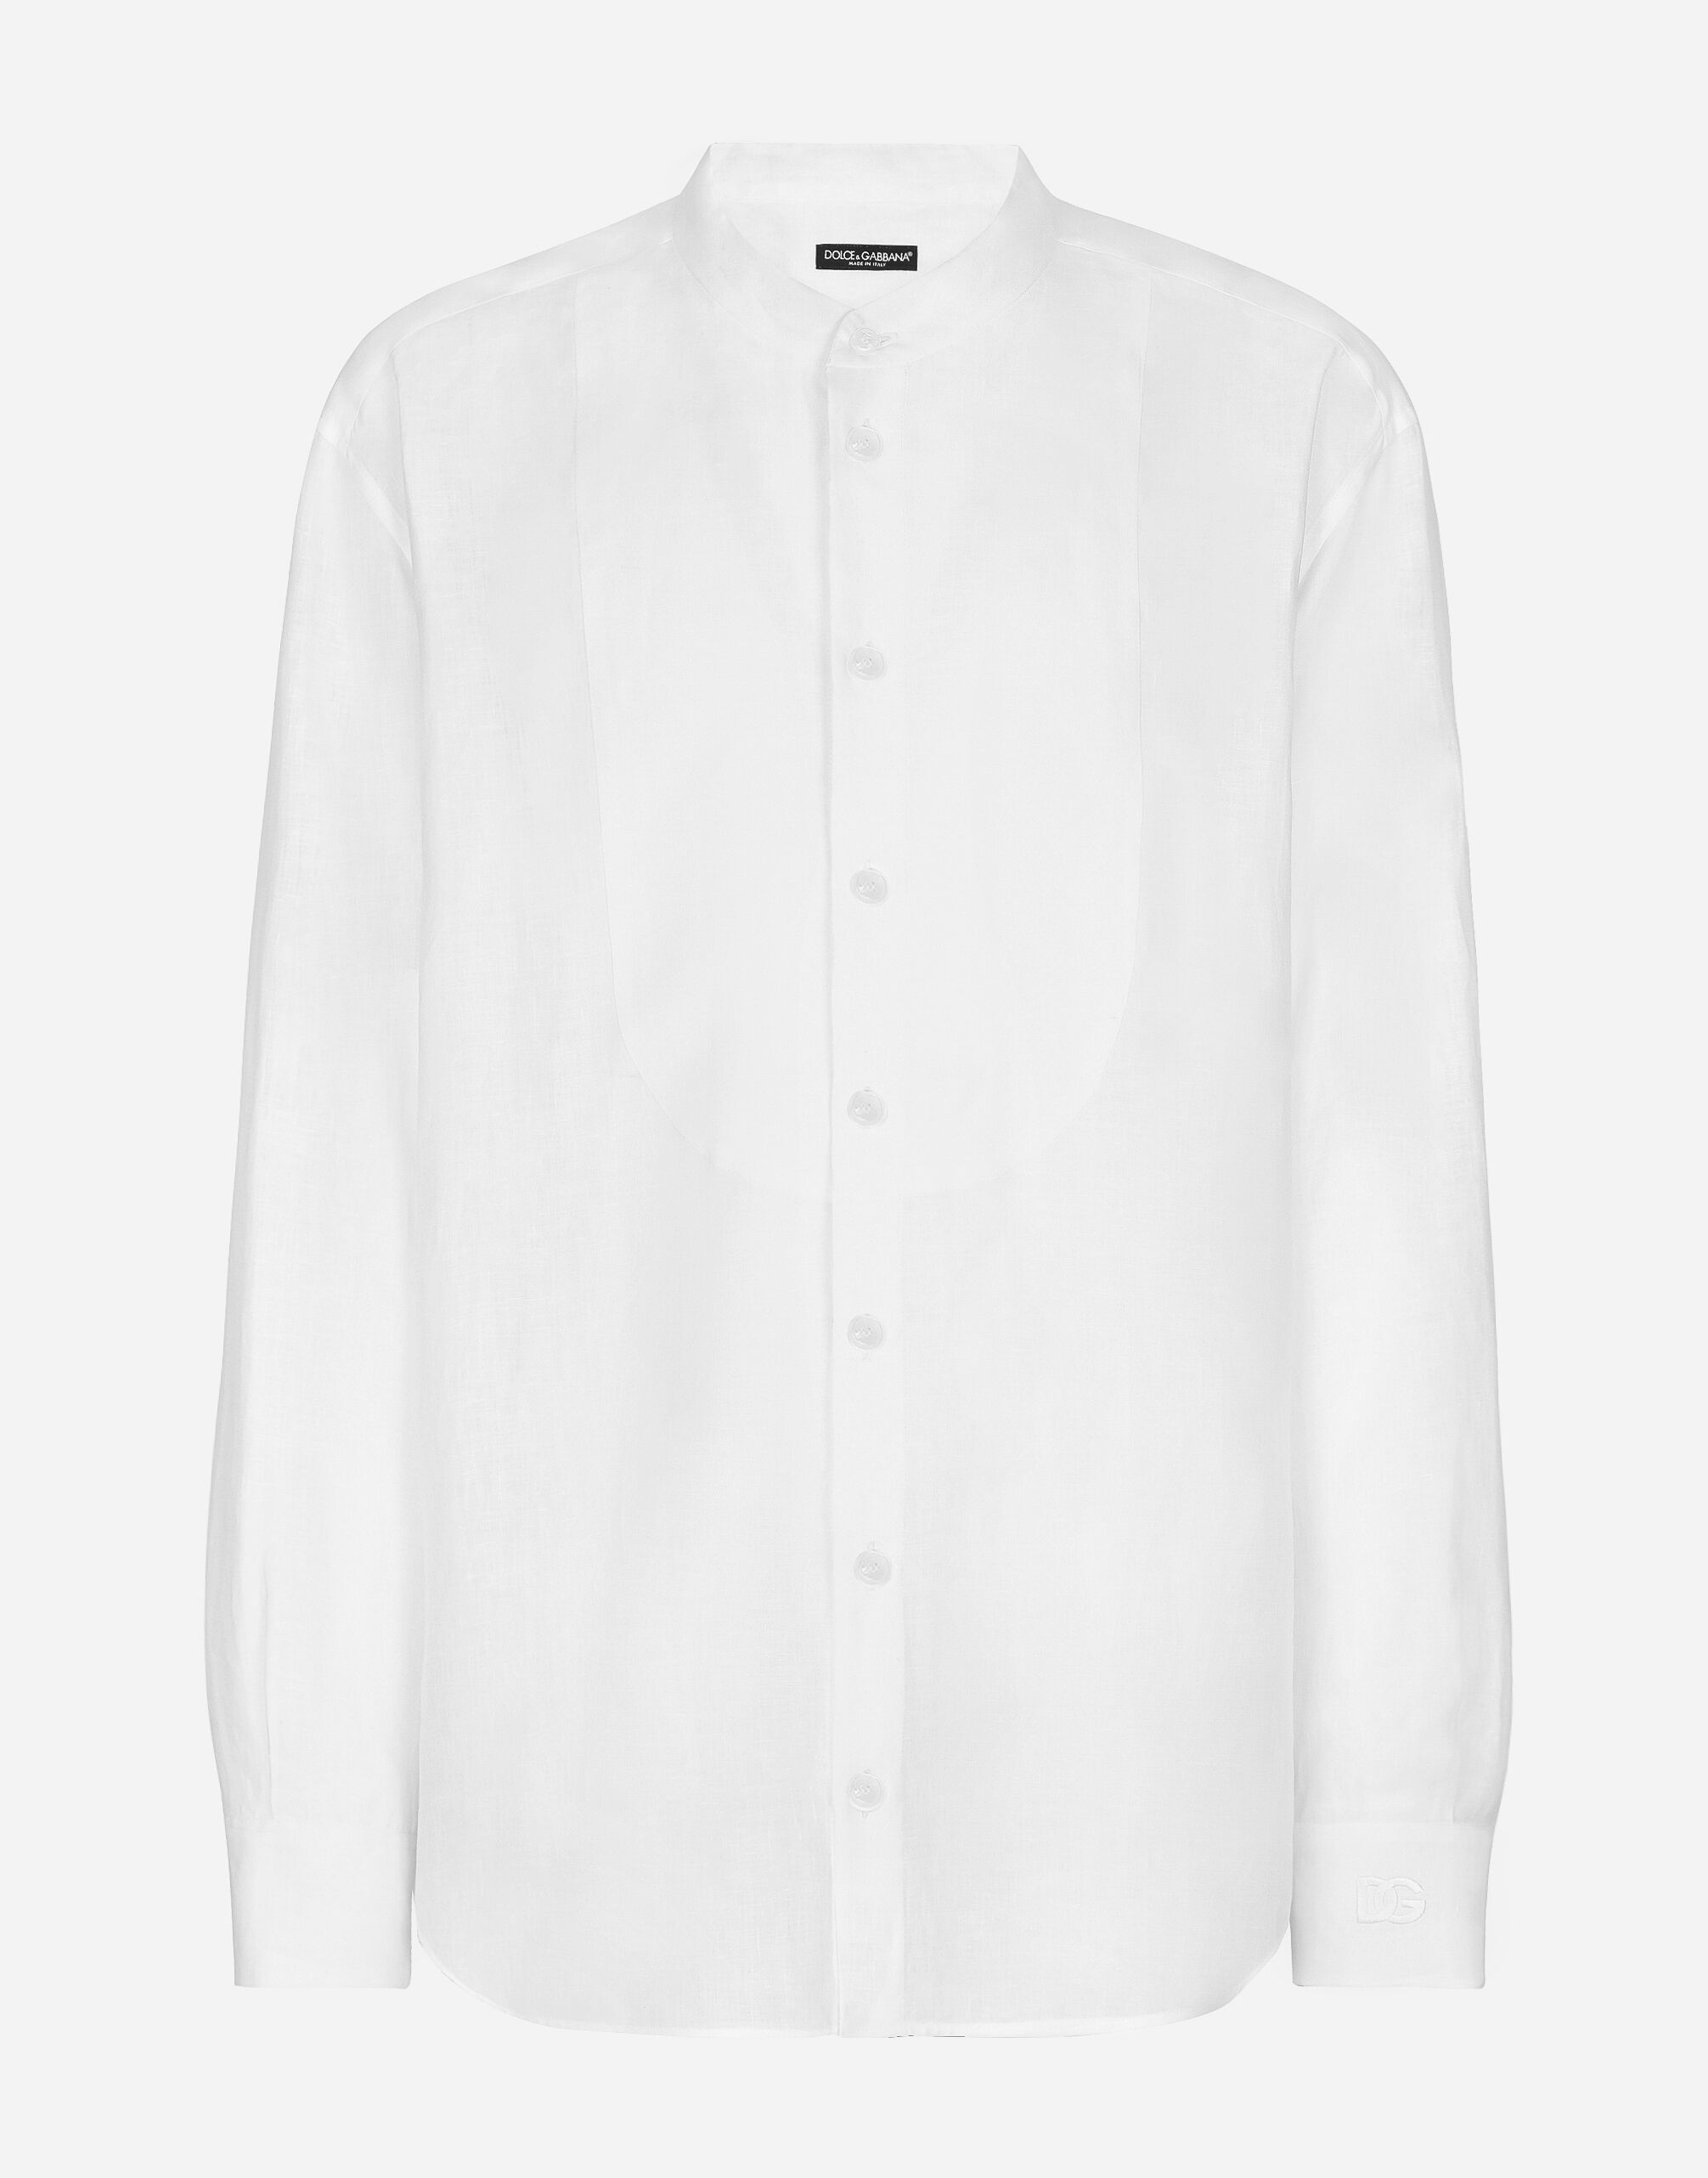 Dolce & Gabbana Leinenhemd weiche Hemdbrust und DG-Stickerei Azurblau G5LI8TFU4LG